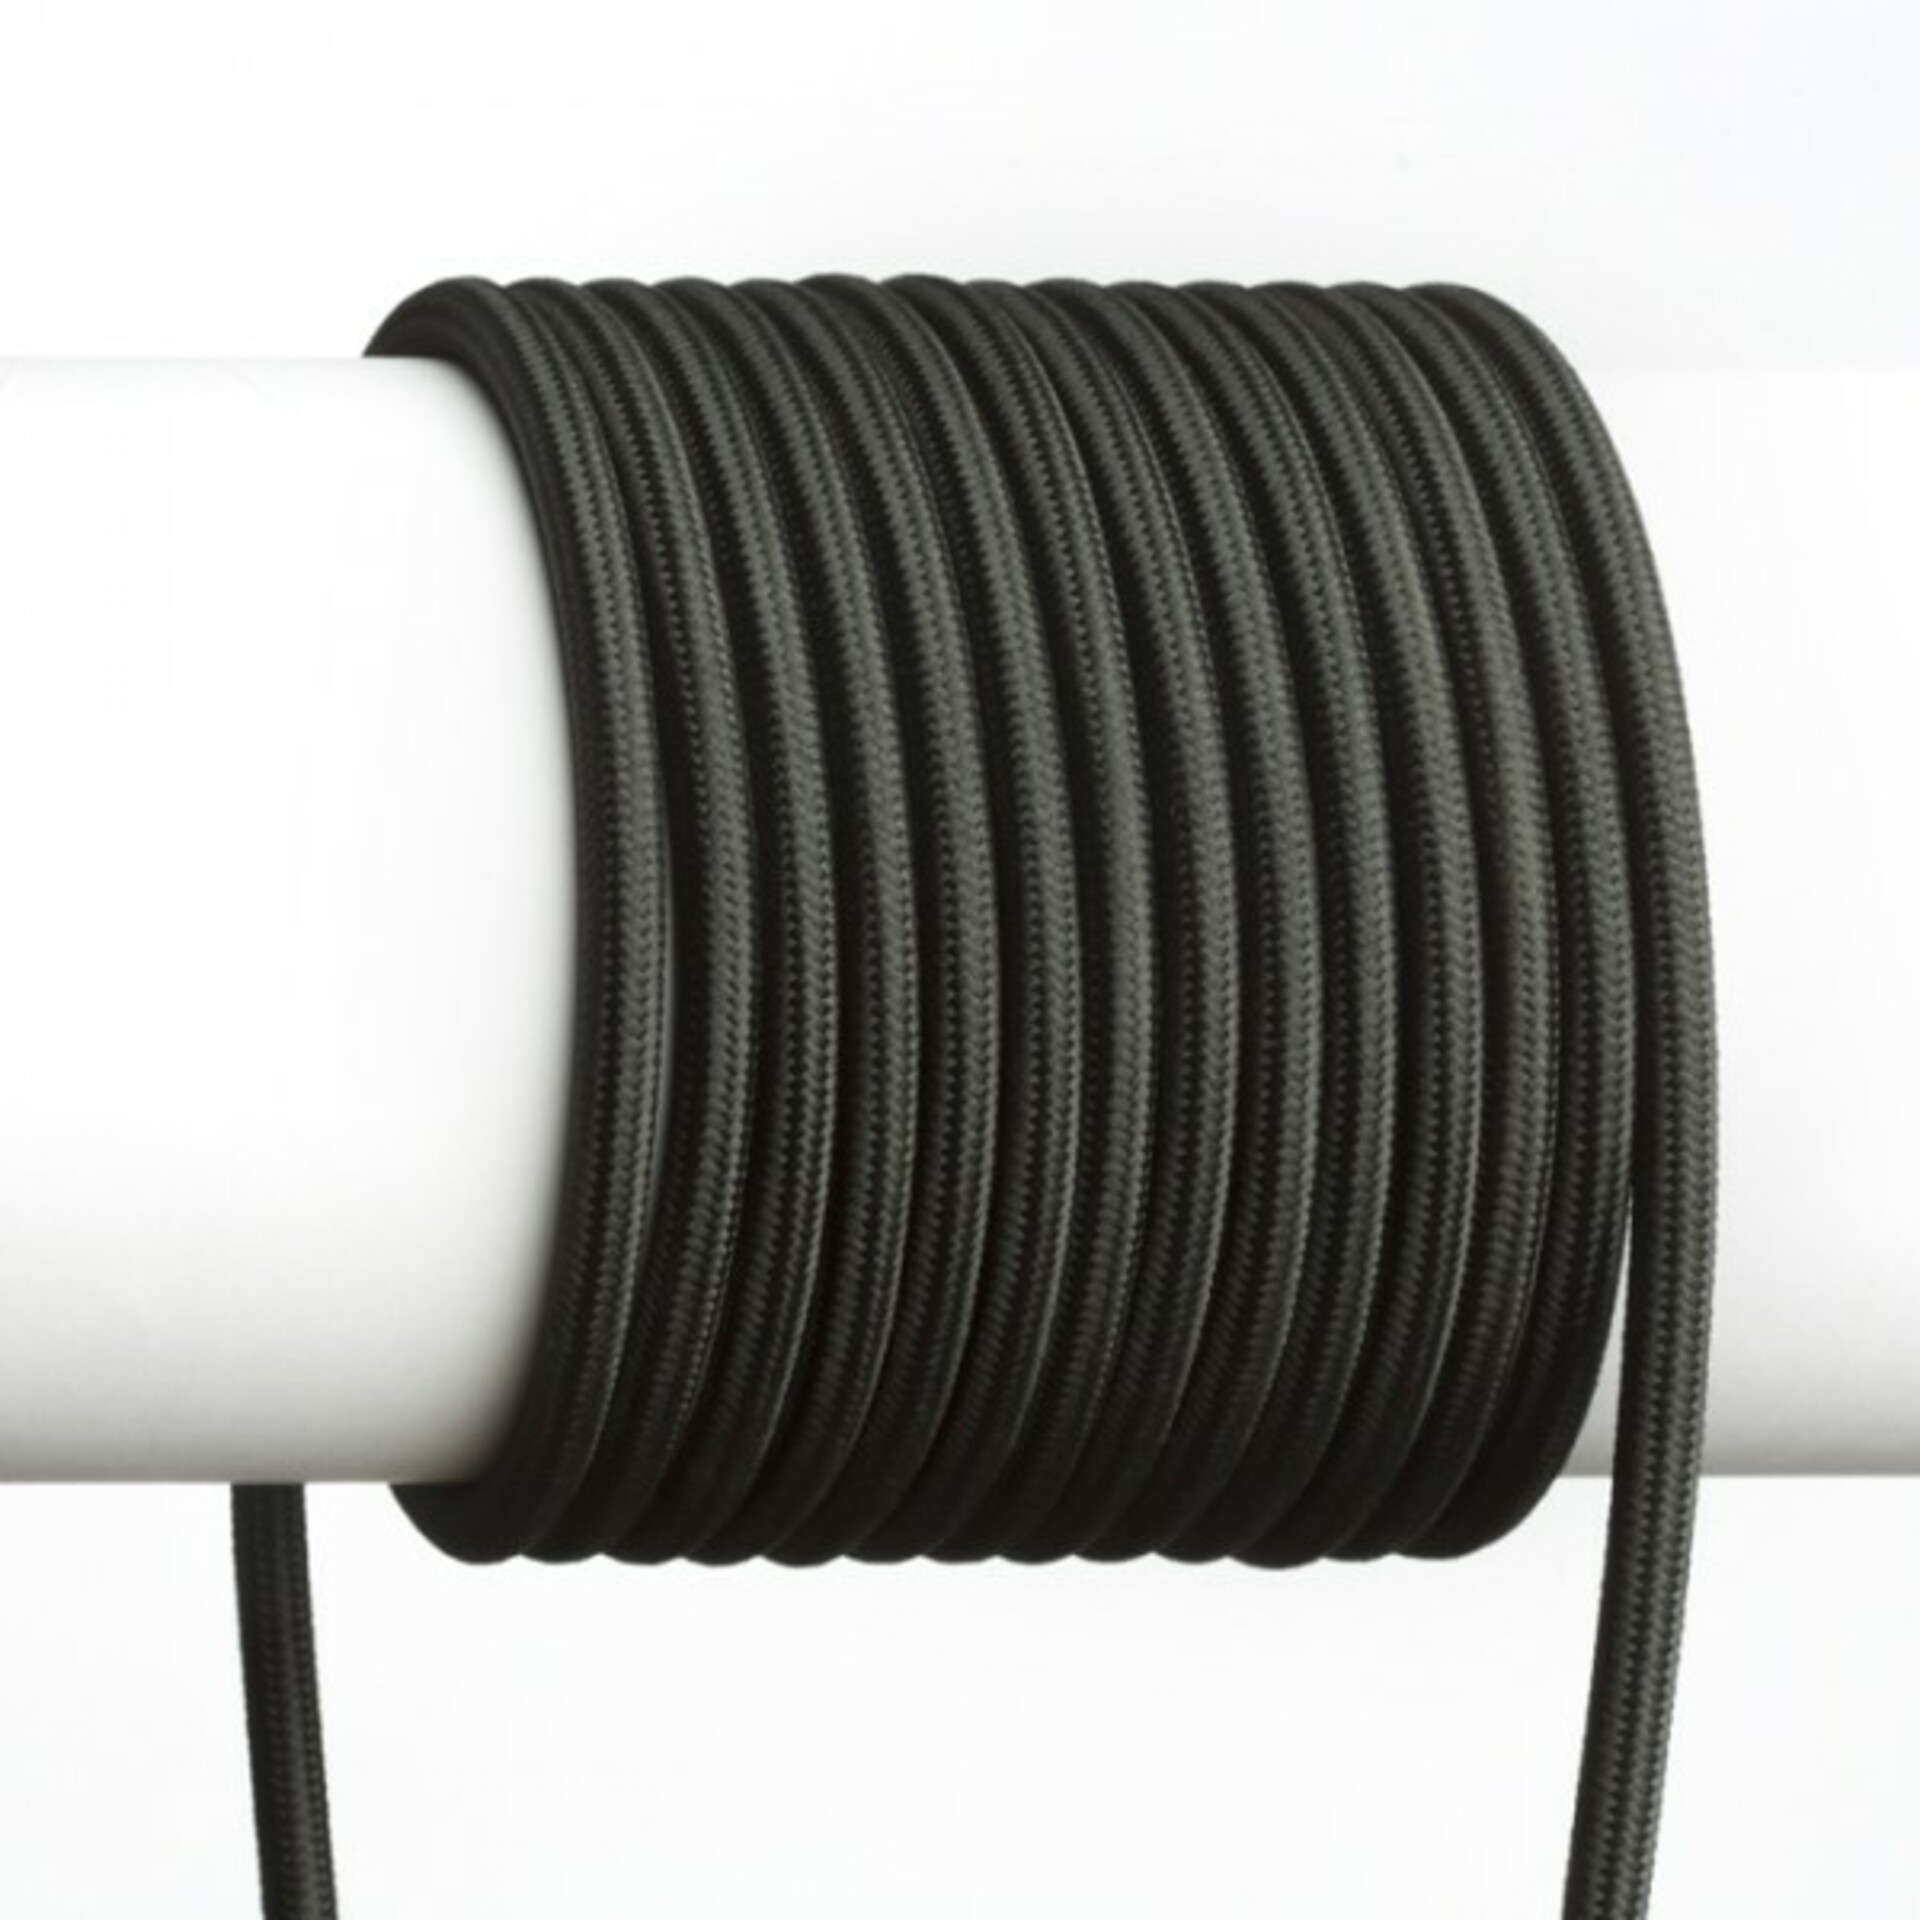 RED - DESIGN RENDL RENDL FIT 3X0,75 1bm textilní kabel černá  R12222